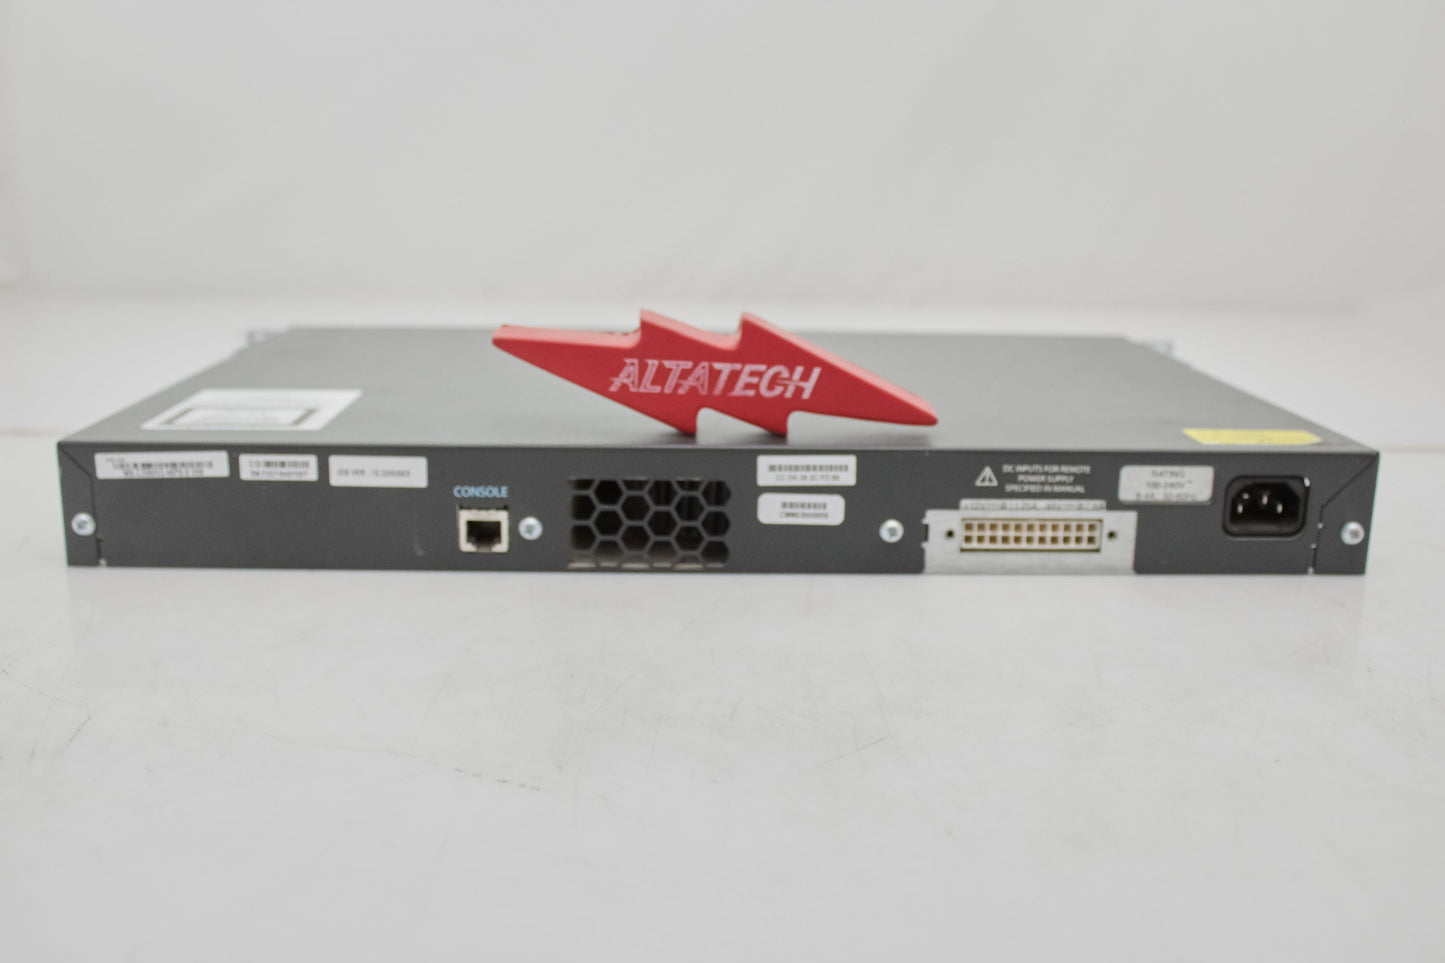 Cisco WS-C3560V2-48PS-S CATALYST 3560 V2 48PS-S, Used